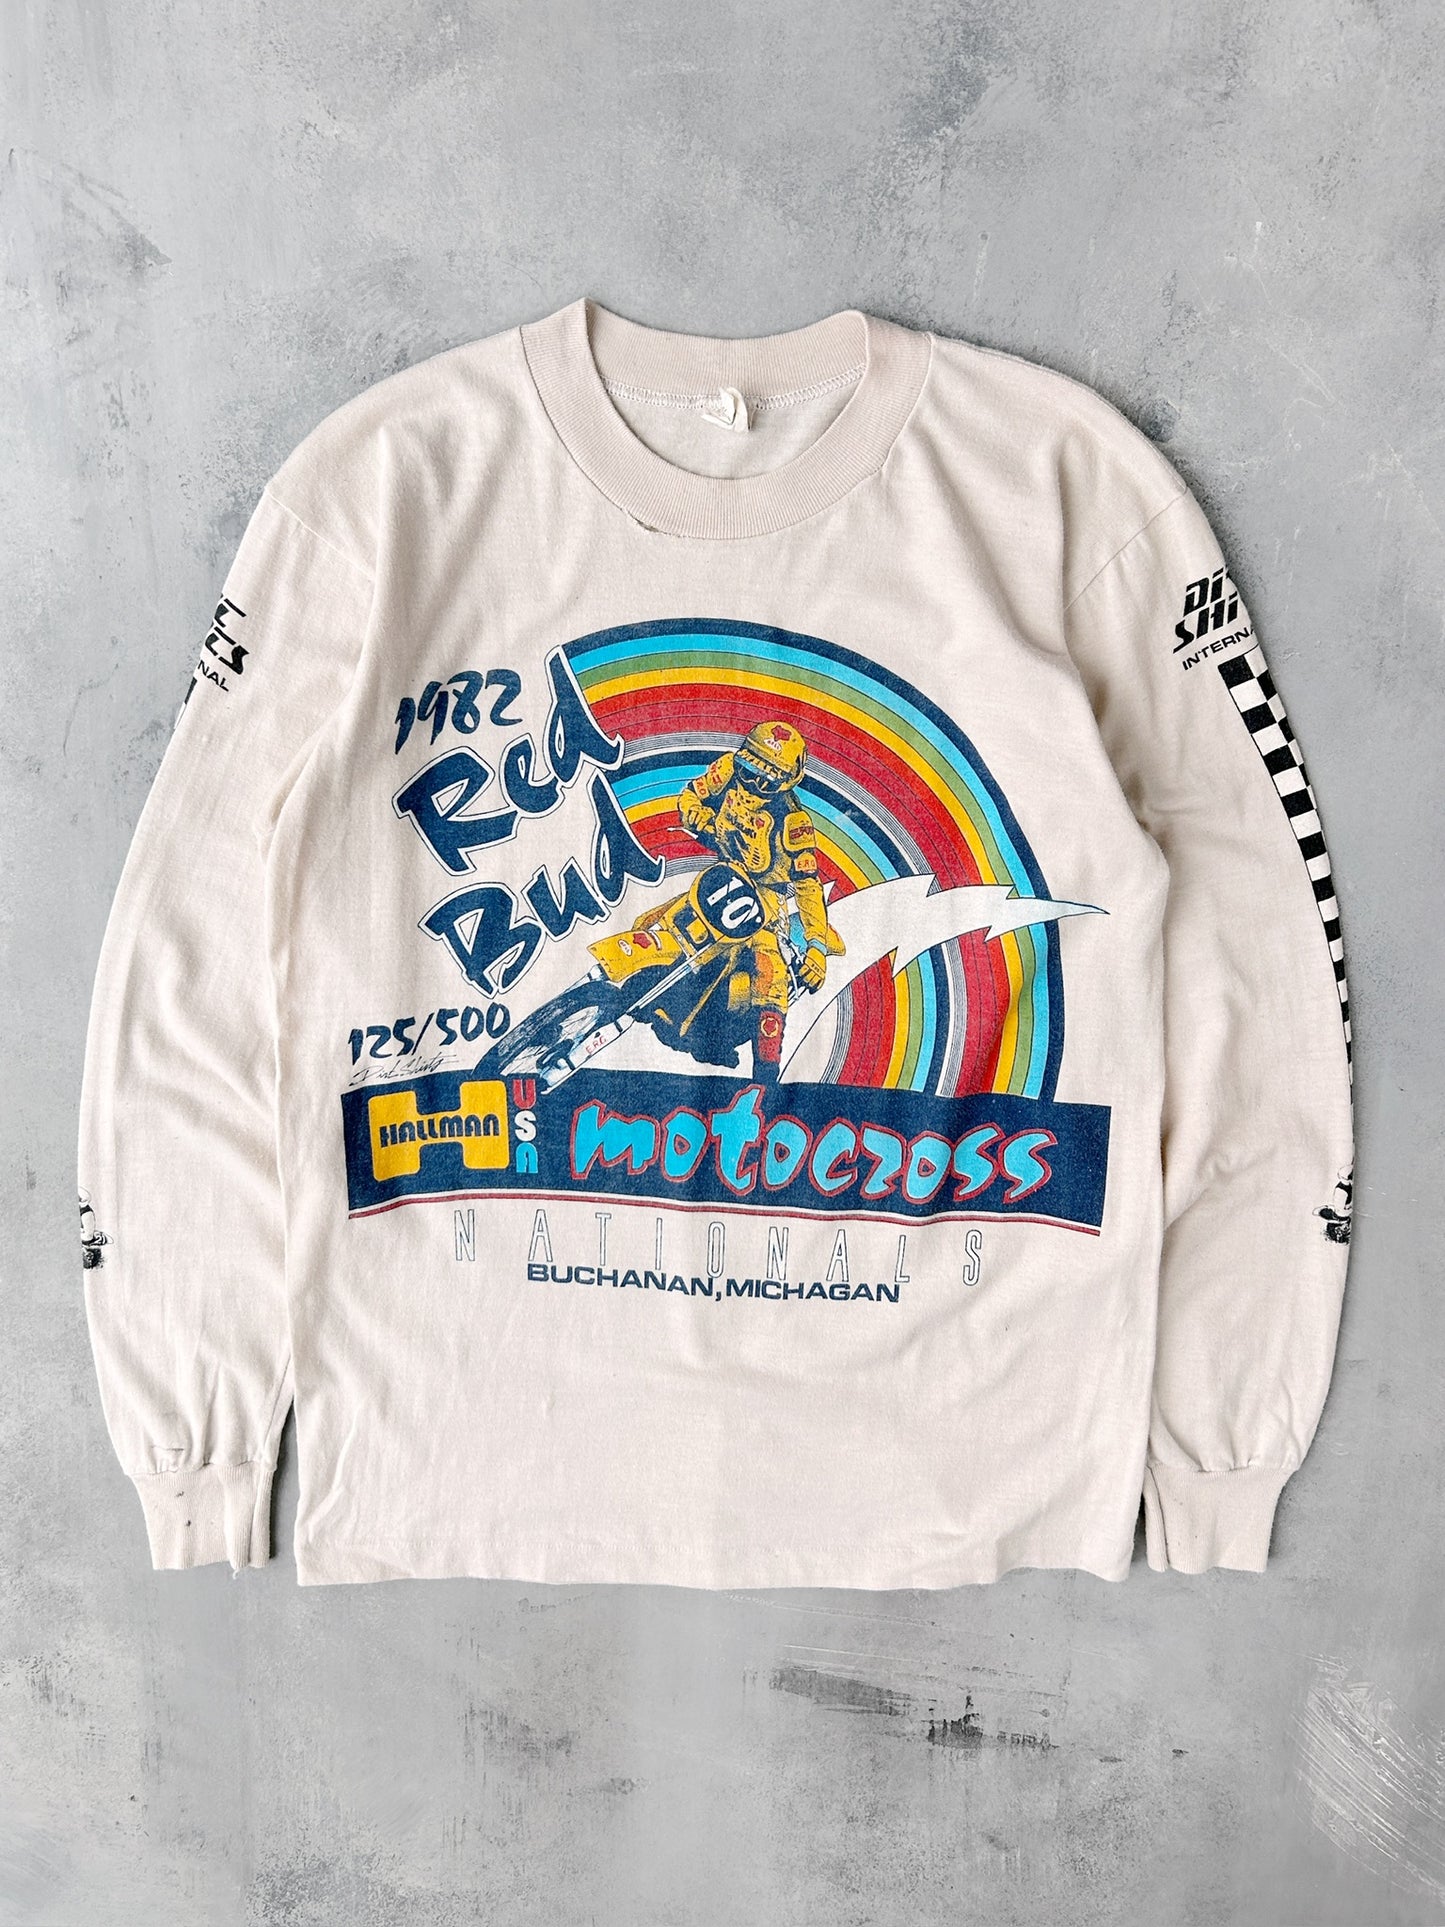 Motocross T-Shirt '82 - Small / Medium